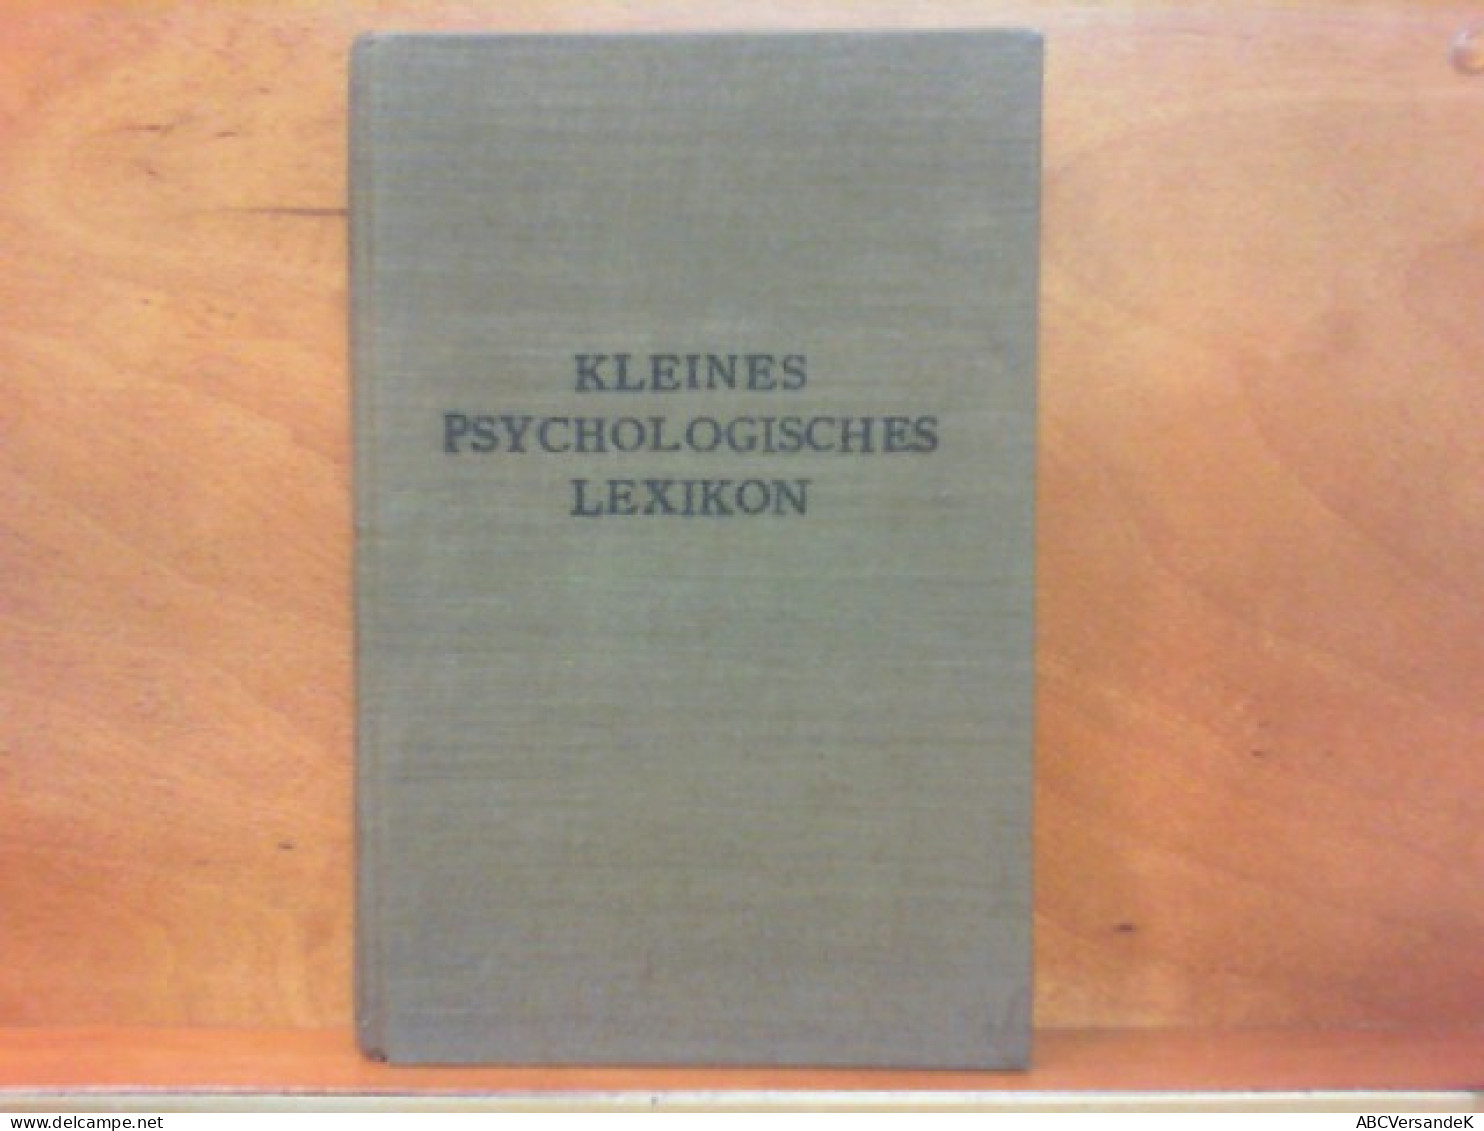 Kleines Psychologisches Lexikon - Ein Fachwörterbuch - Psychology